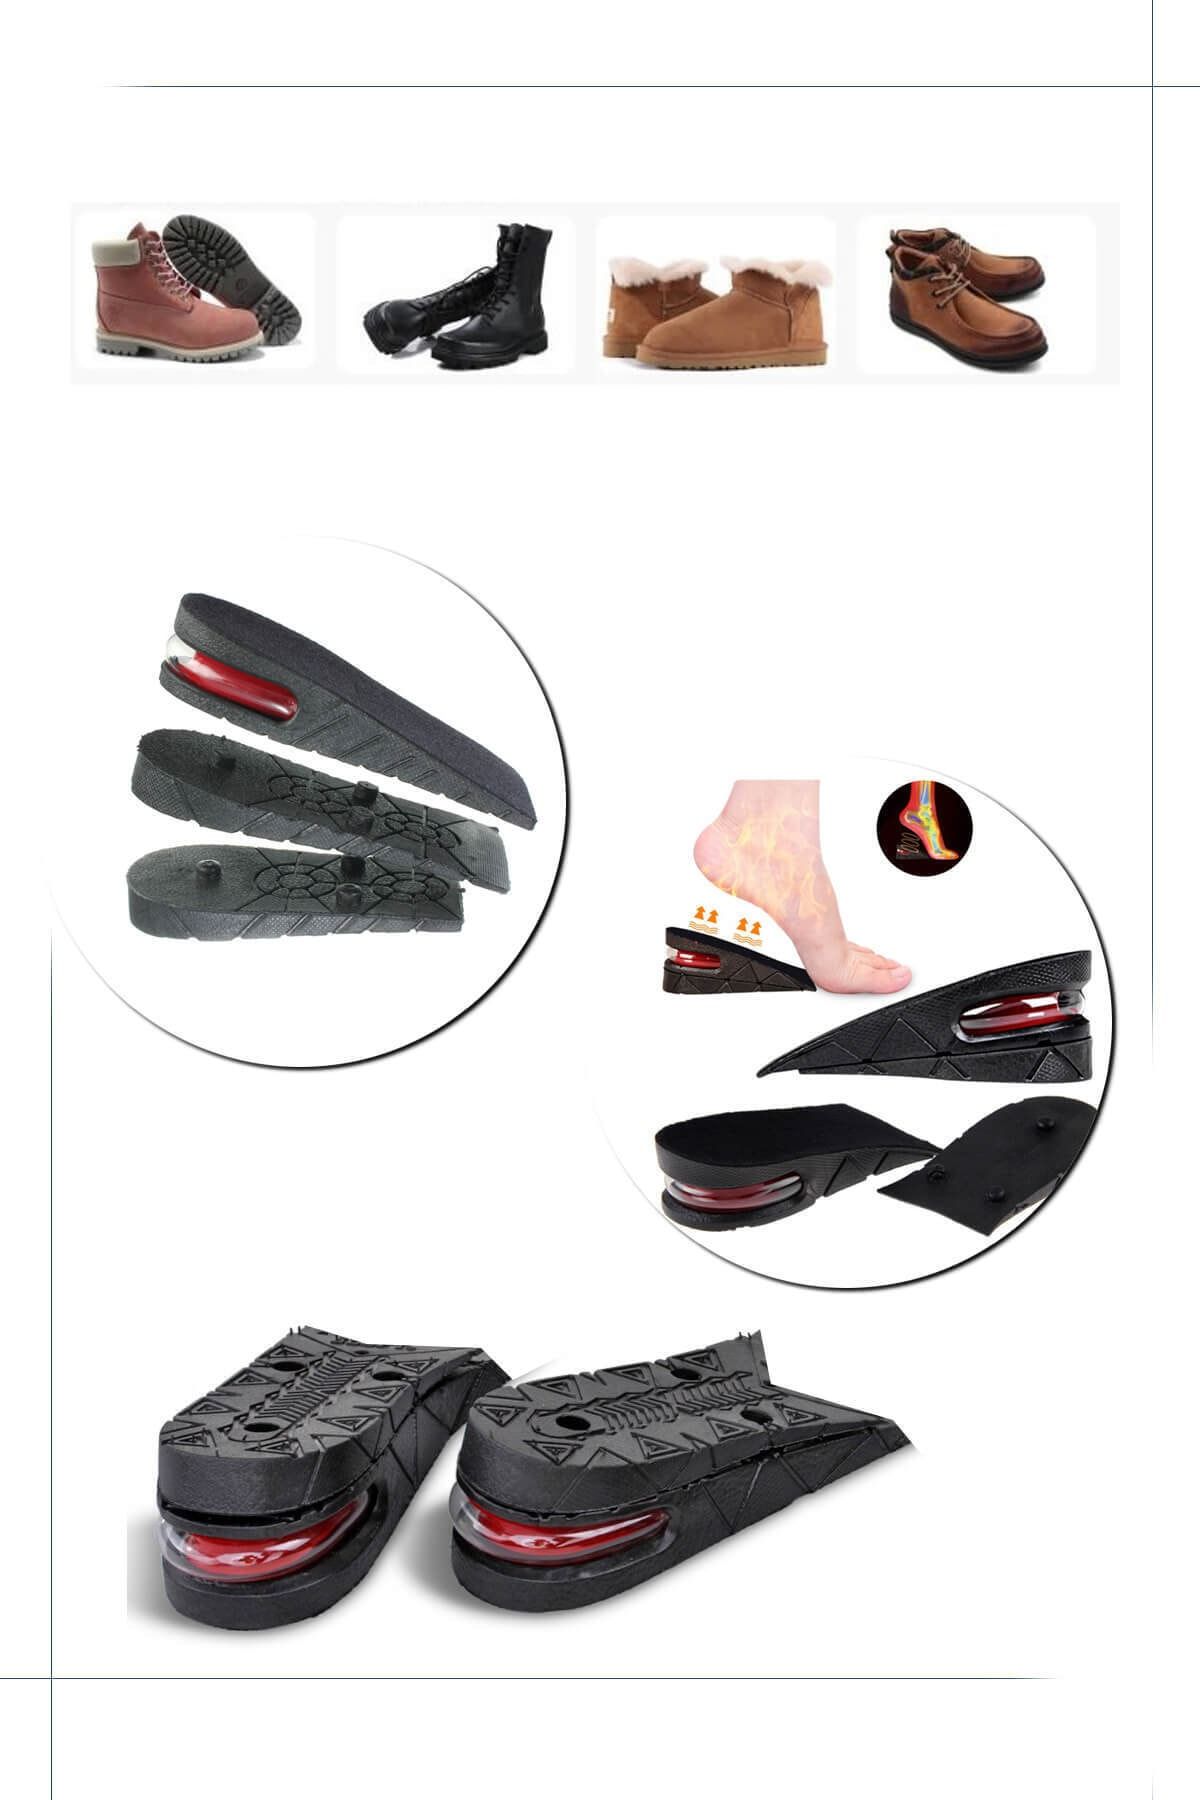 Genel Markalar Unisex Kadın Erkek Için Hava Yastıklı 5 Cm Boy Uzatıcı Tabanlık Spor Günlük Ayakkabı Pedi Astarı